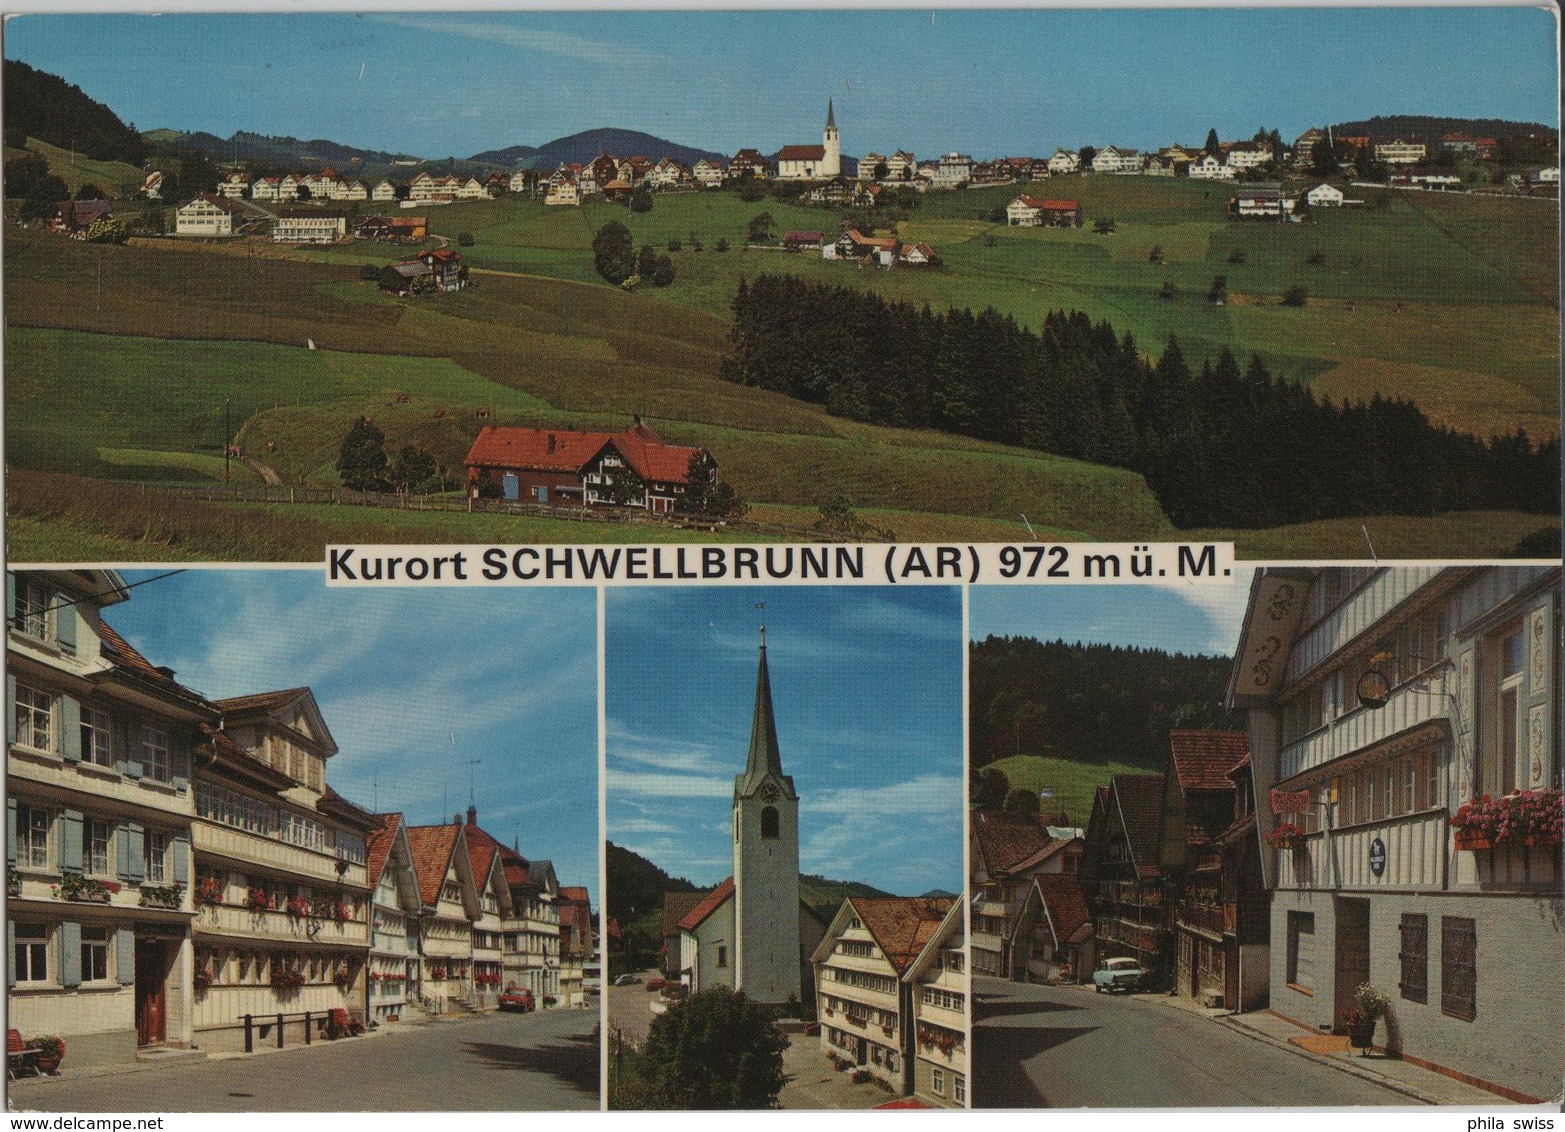 Kurort Schwellbrunn AR - Generalansicht, Dorfpartie - Photo: Gross - Schwellbrunn